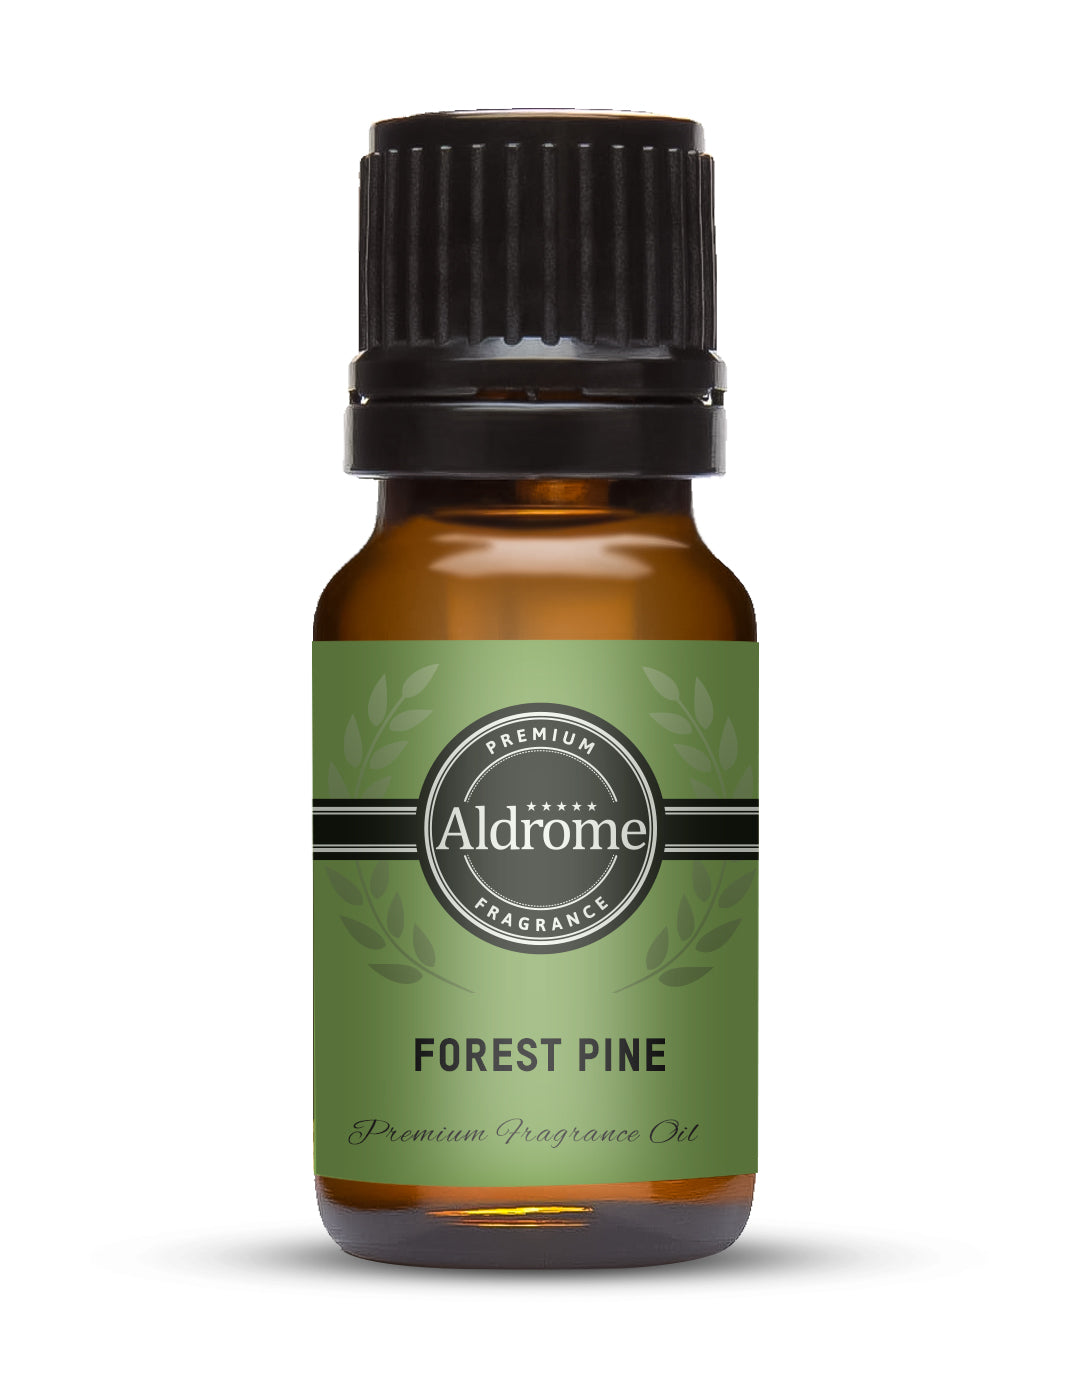 Forest Pine Fragrance Oil - 10ml | Buy Forest Pine Fragrance Oil